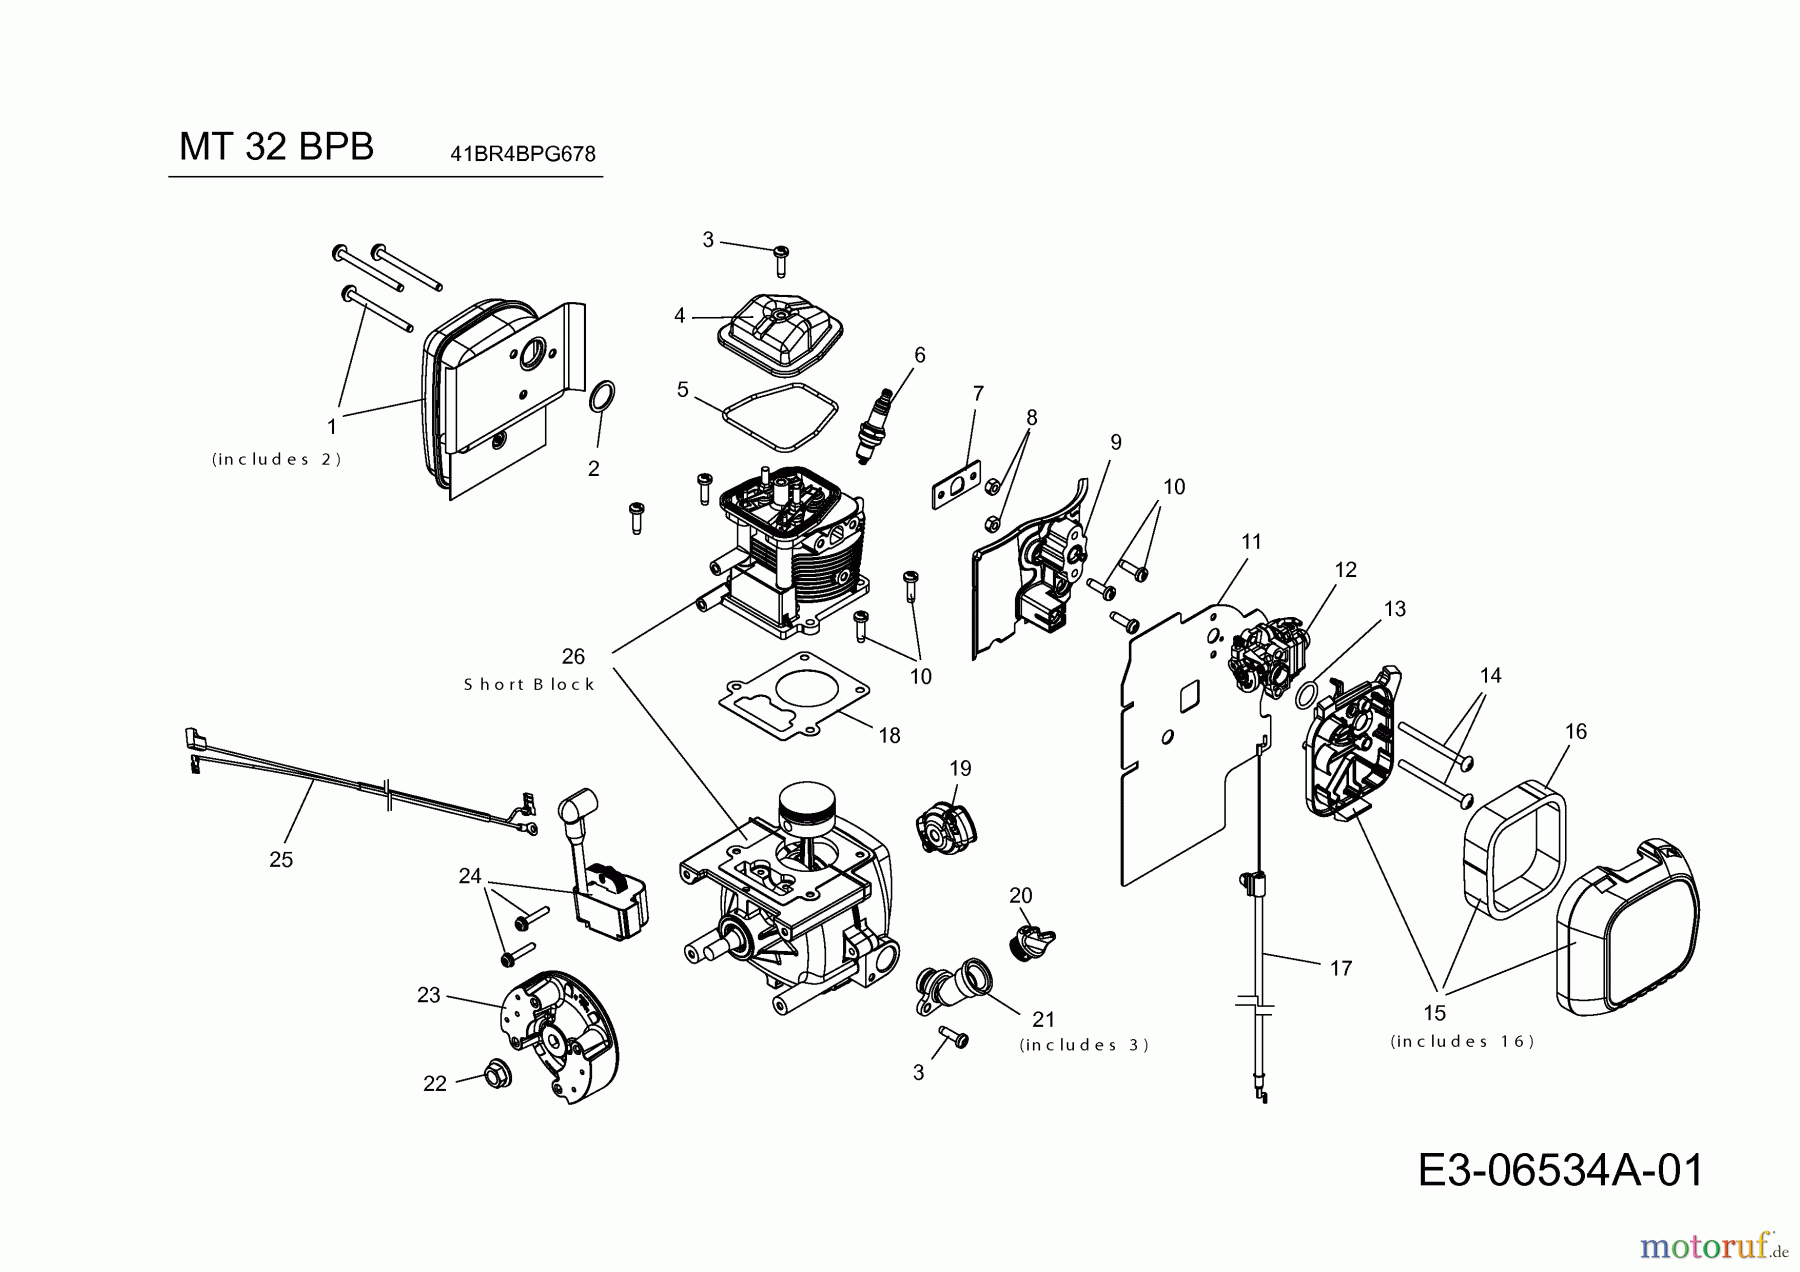  MTD Leaf blower, Blower vac MT 32 BPB 41BR4BPG678  (2017) Engine